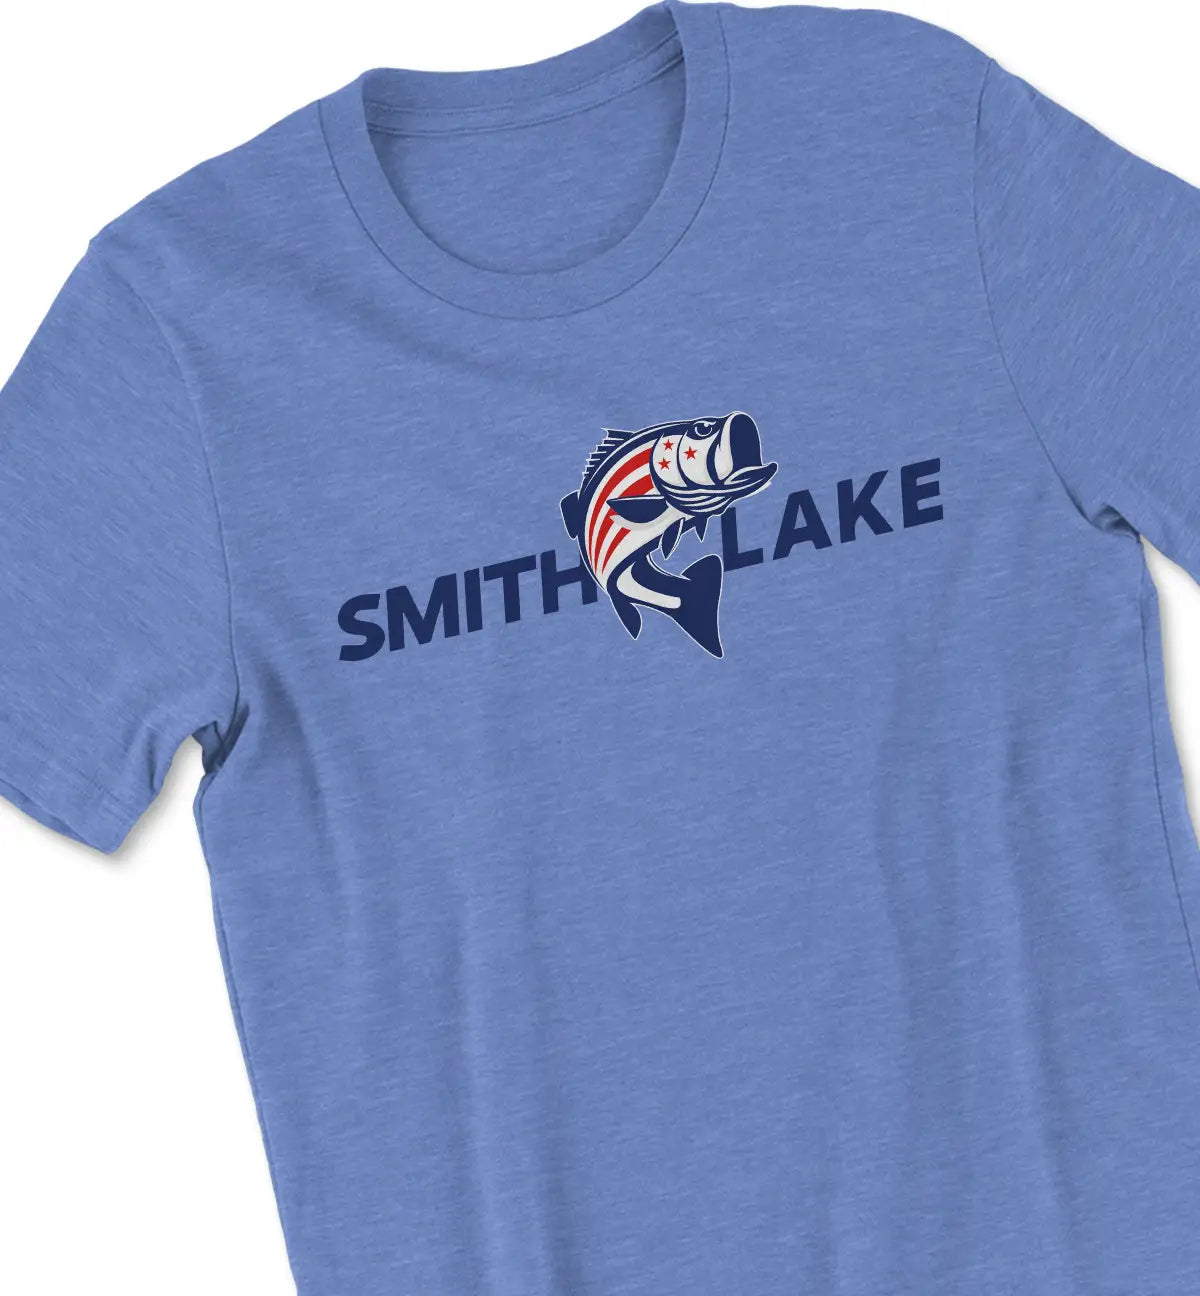 RWB Bass - Smith Lake Tshirt